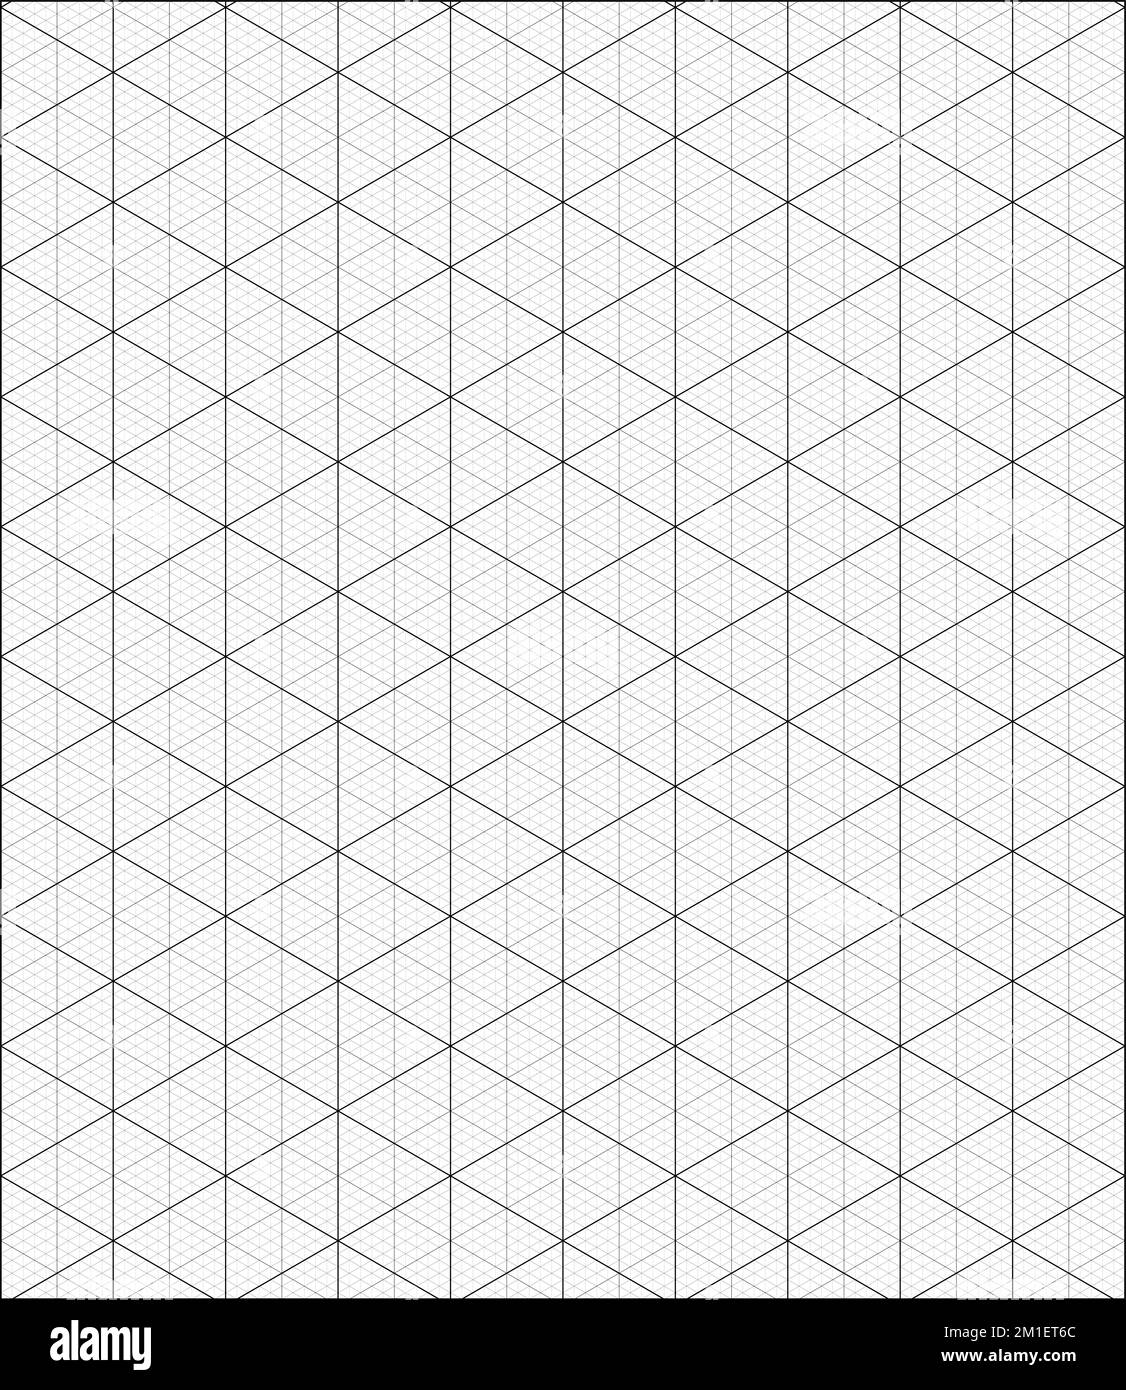 Grille isométrique noire avec papier graphique de ligne de guidage verticale. Ligne de guidage de la règle triangulaire et hexagonale. Motif de grille géométrique noir et blanc Illustration de Vecteur